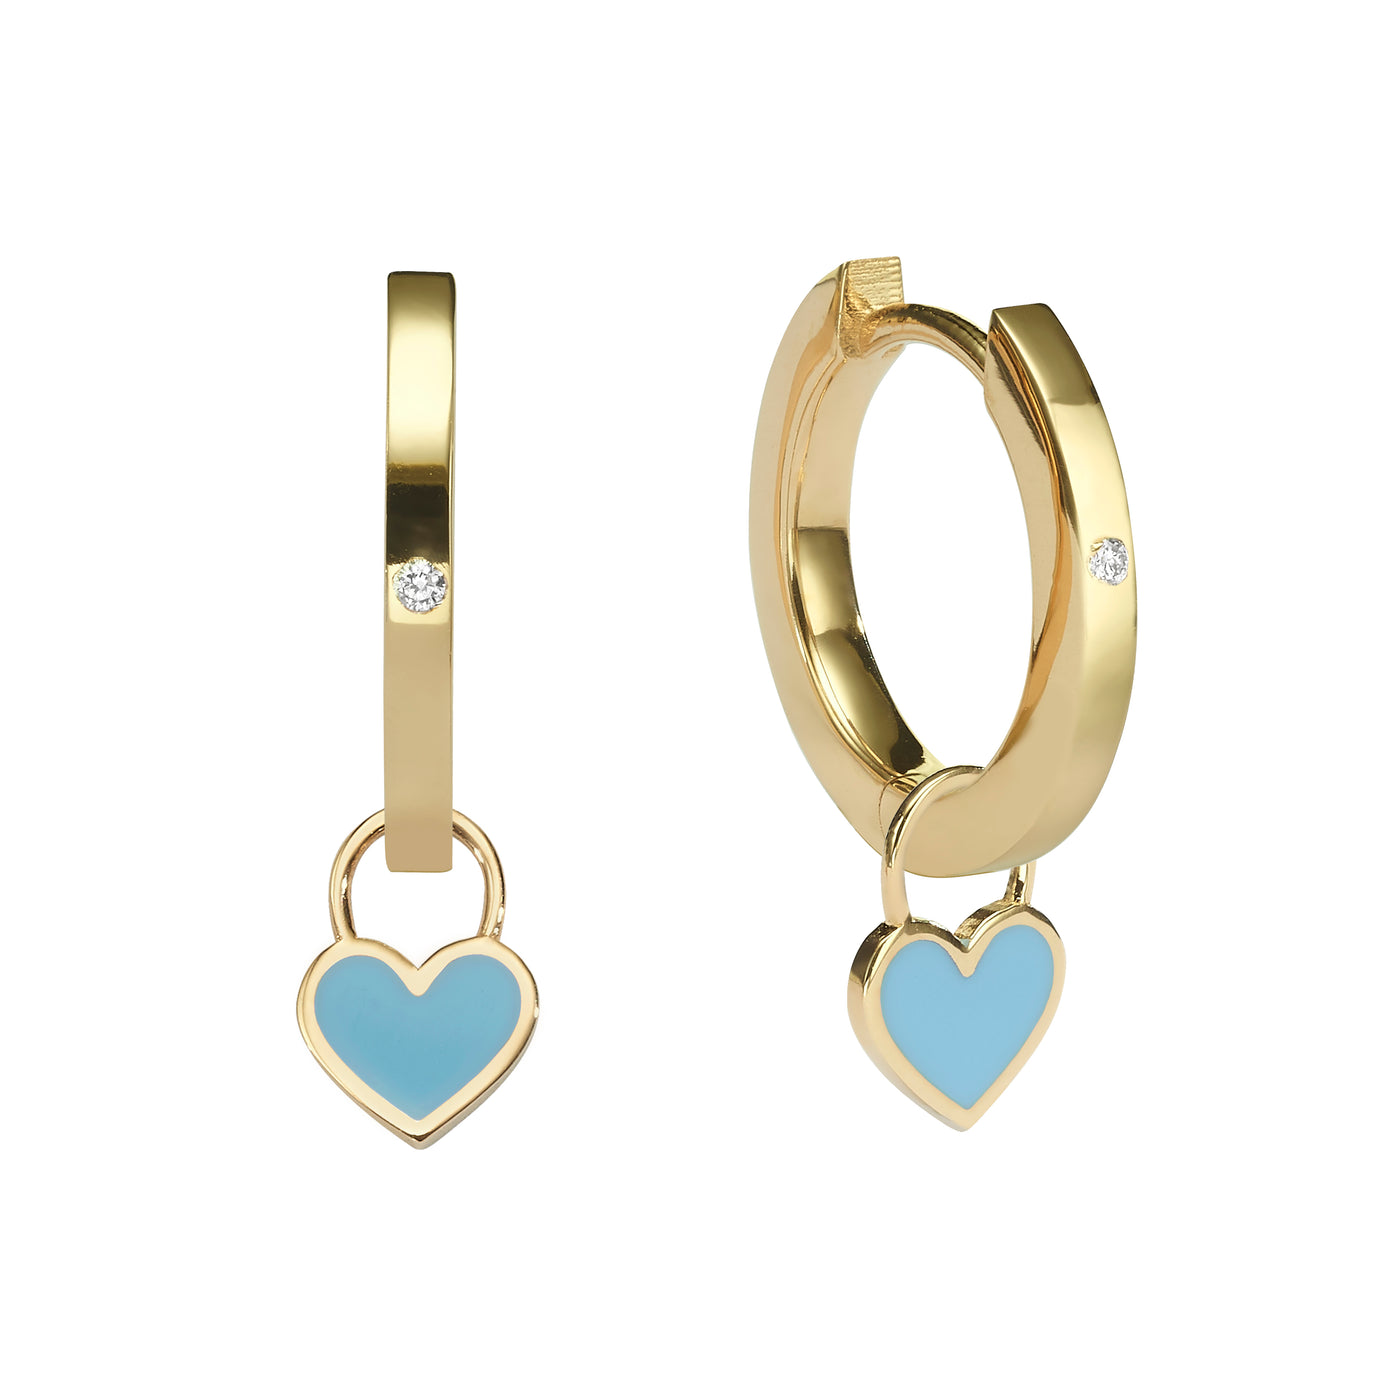 Midi Gypsy gold hearts earrings